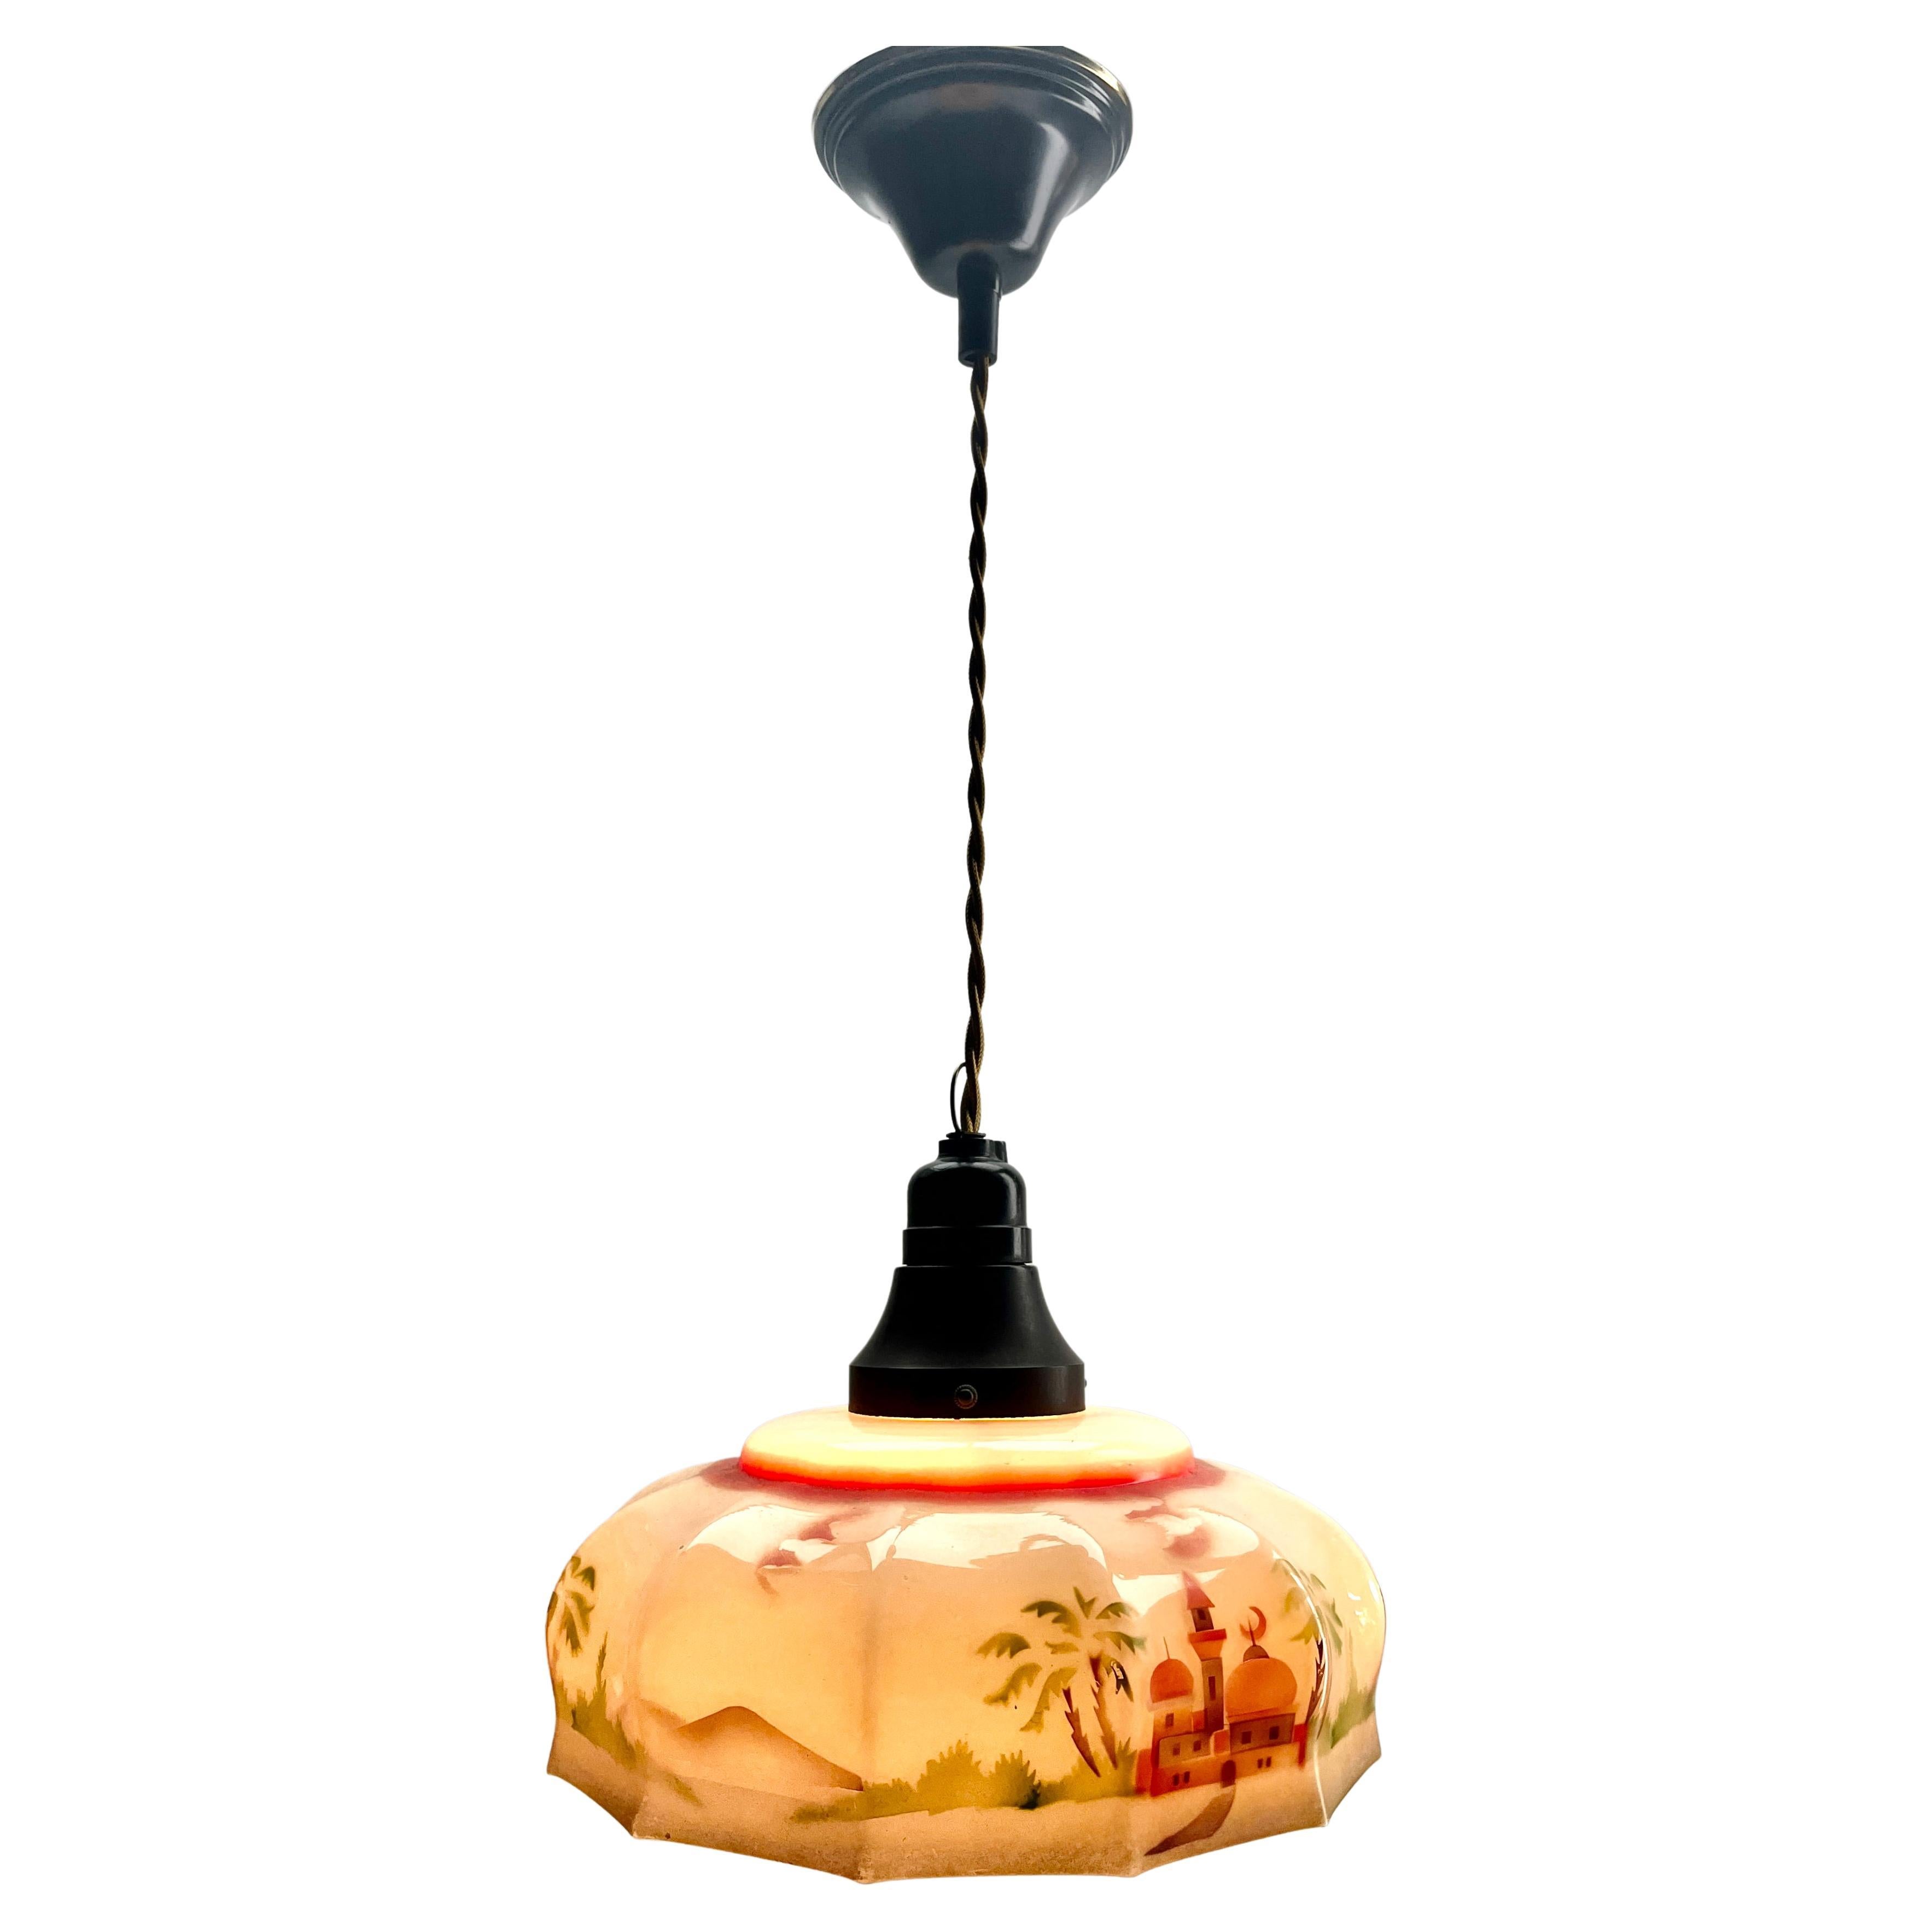 Art Deco Ceiling Lamp Bakelite fitting E27 Scailmont Belgium Glass Shade, 1930s